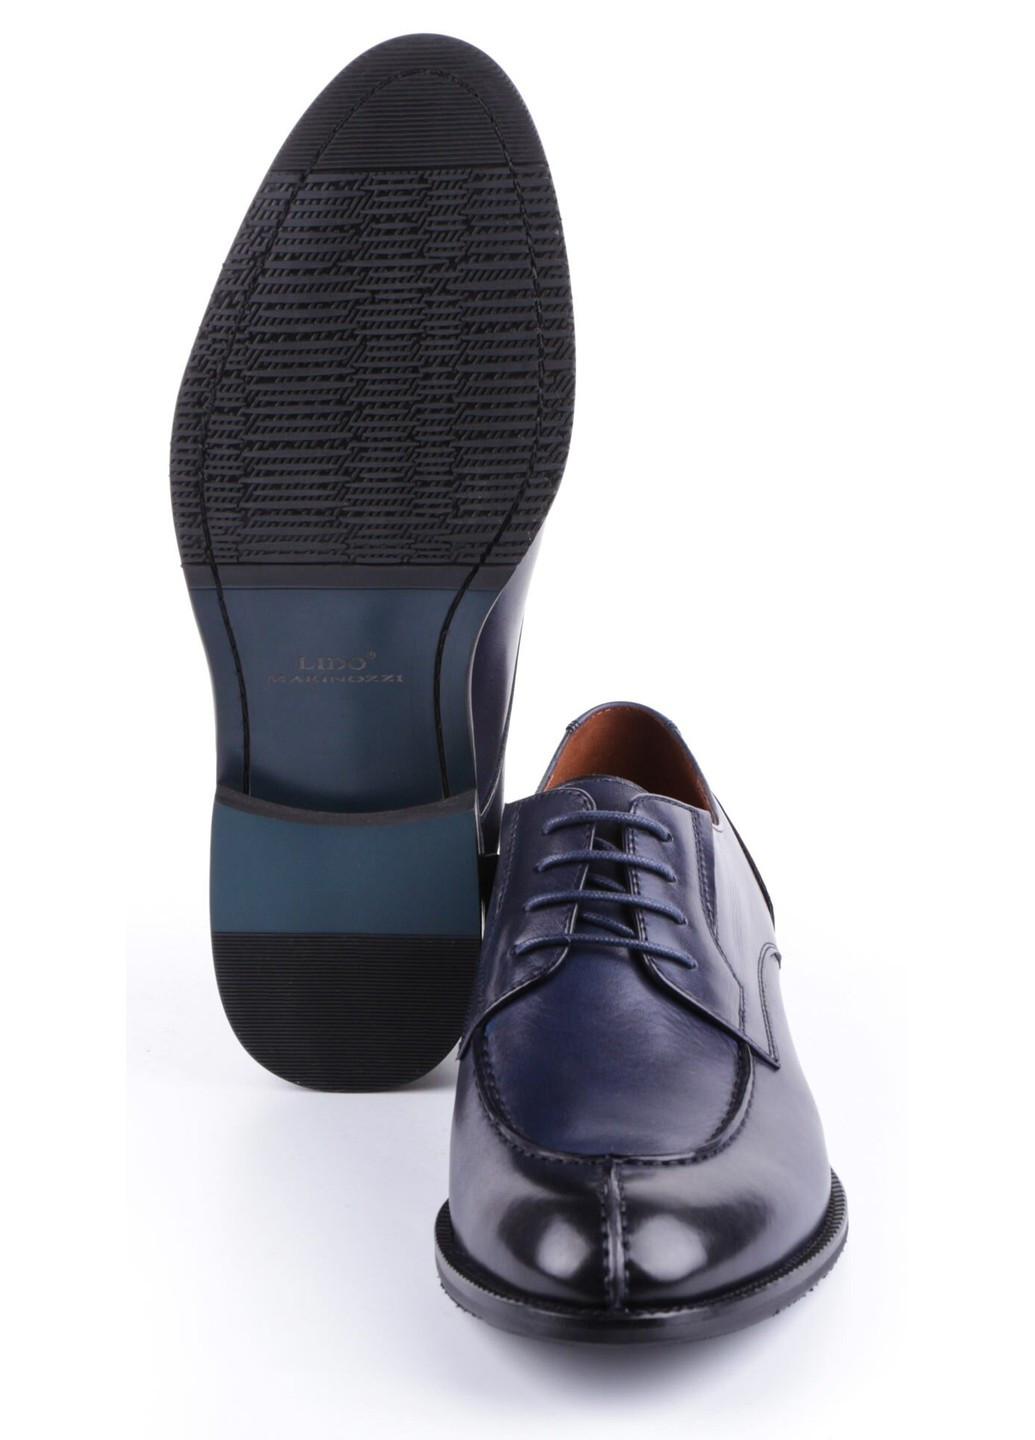 Синие мужские туфли классические 11081 Lido Marinozzi на шнурках